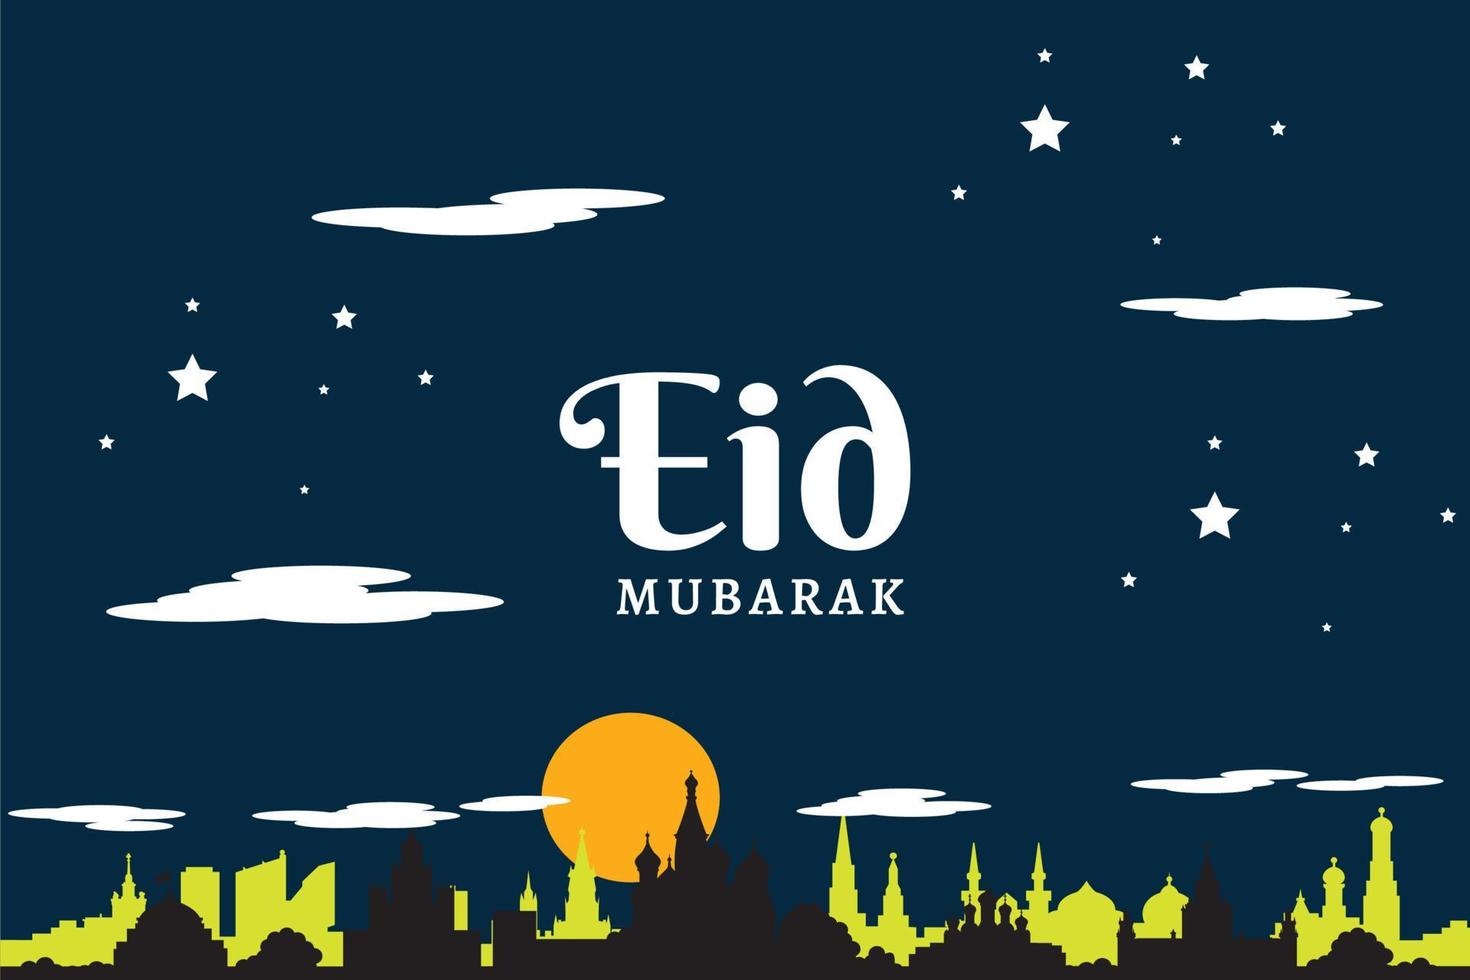 eid mubarak vector illustratie banner en social media post